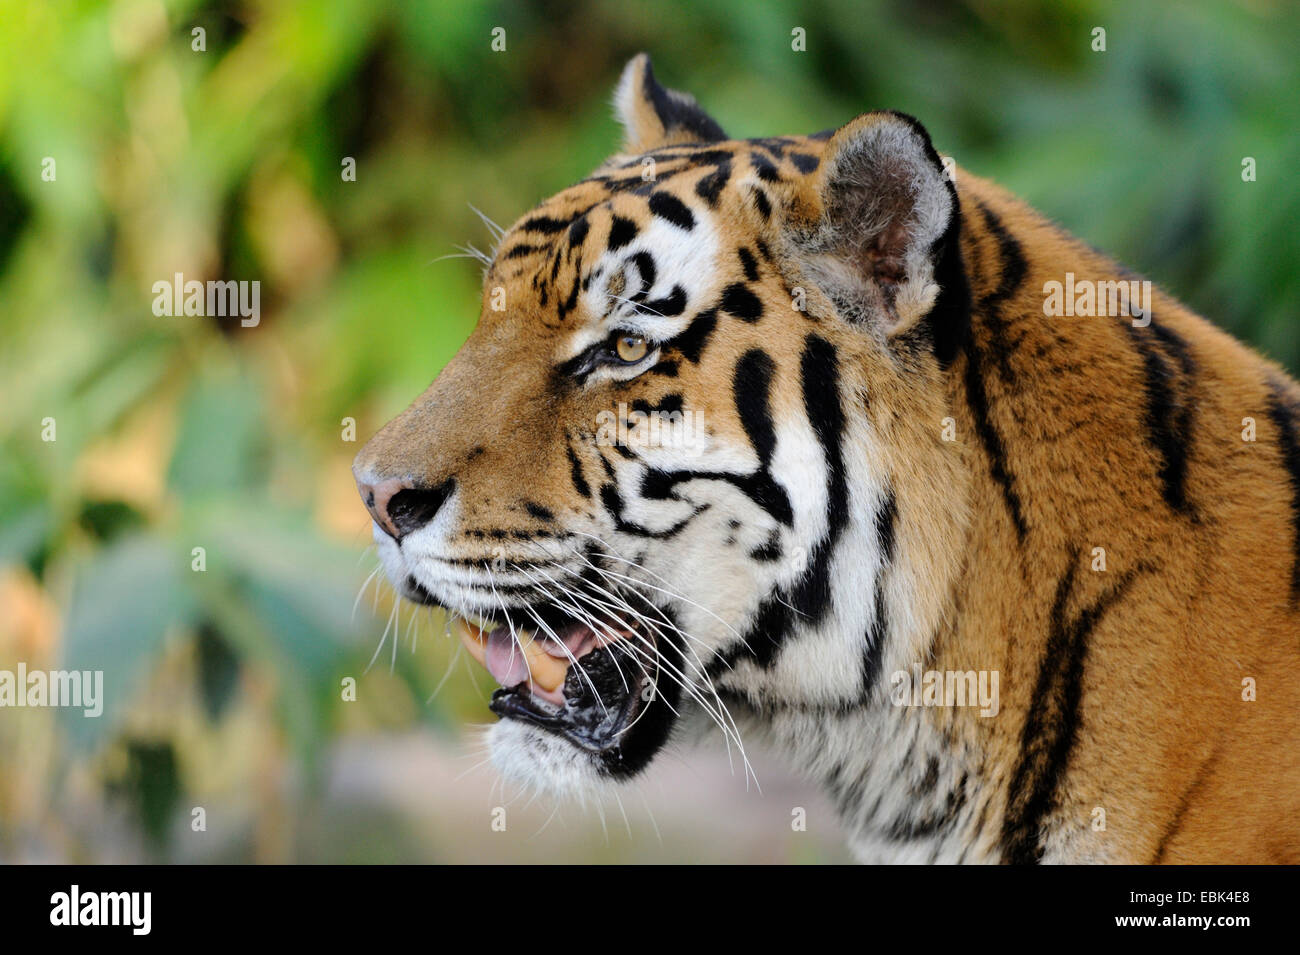 Siberian tiger, Amurian tiger (Panthera tigris altaica), portait Stock Photo